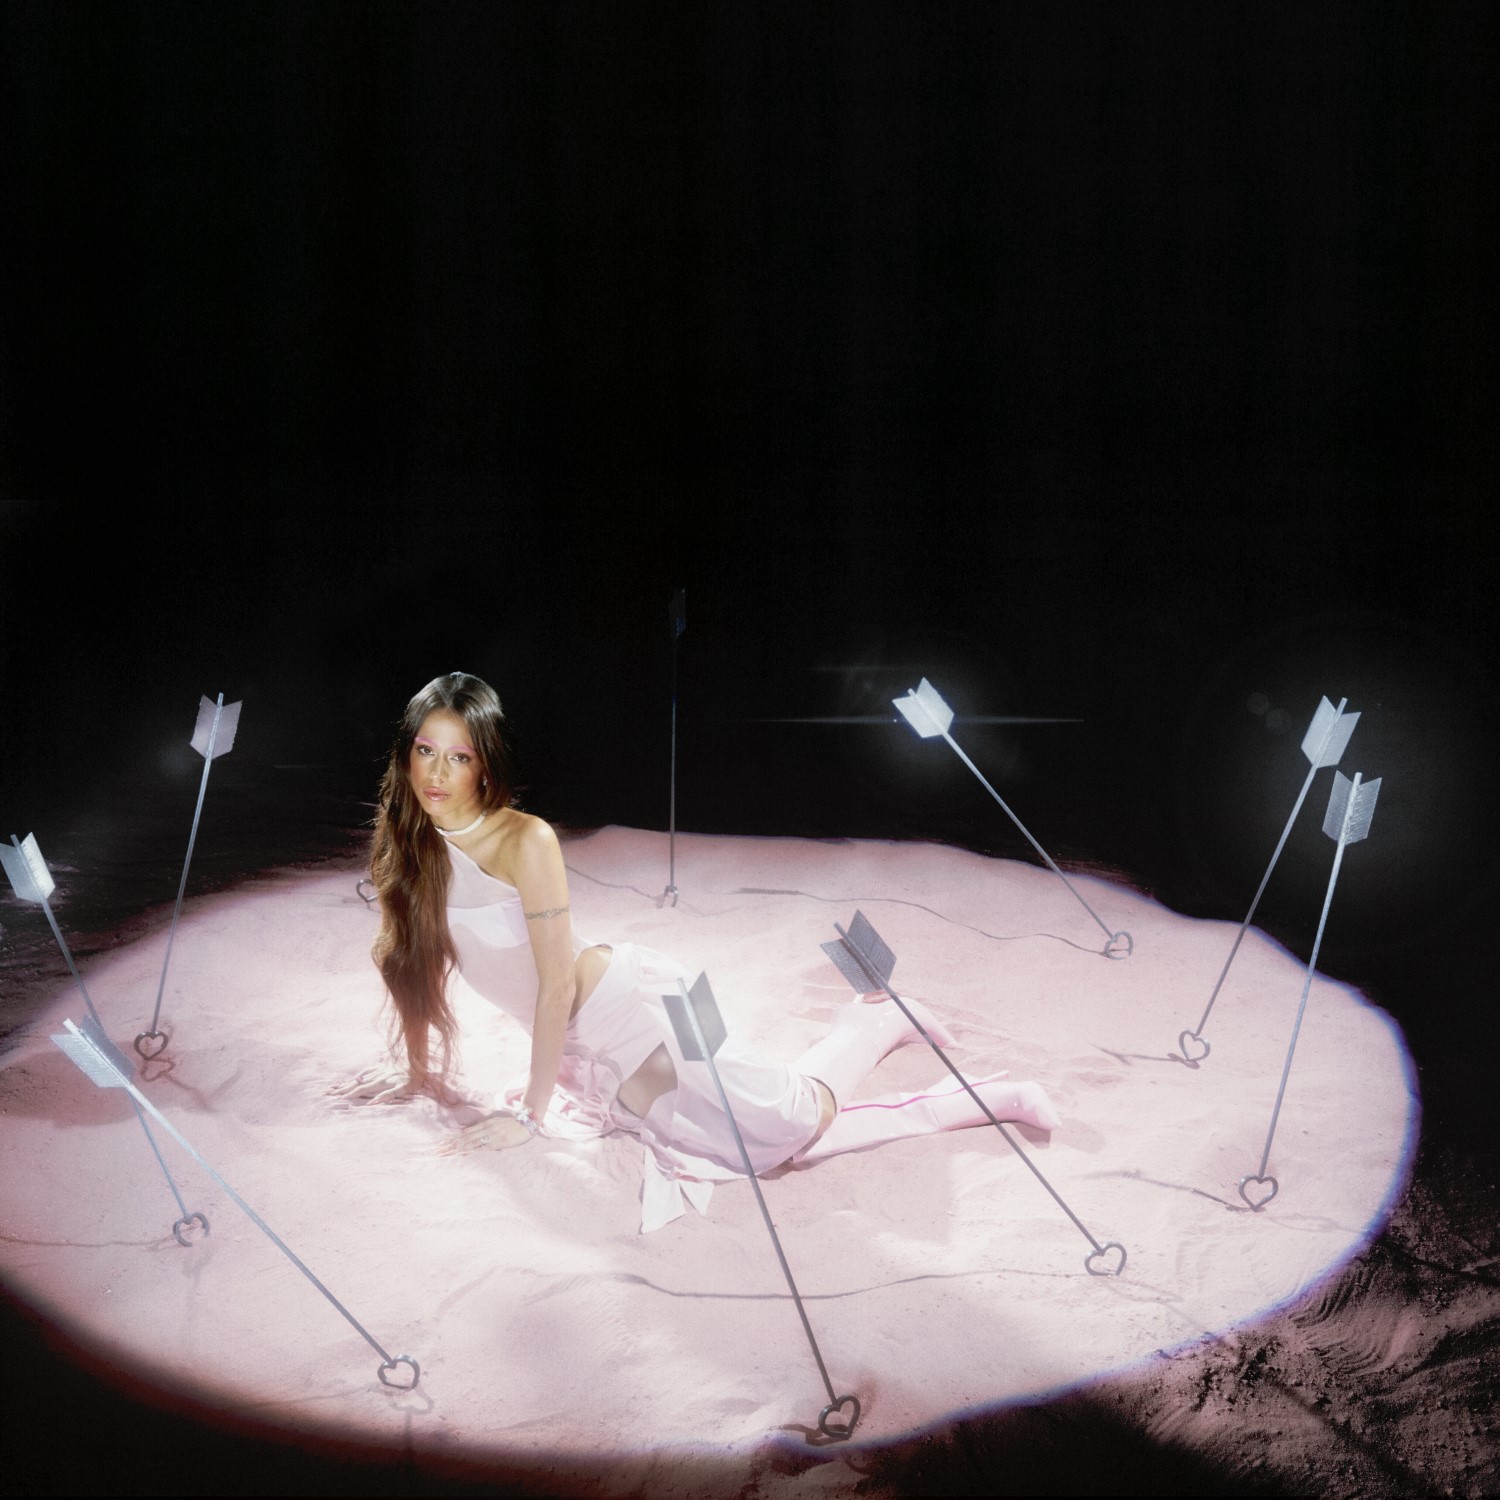 Imagen promocional del video del sencillo Cupido, que da nombre al nuevo disco de Tini.